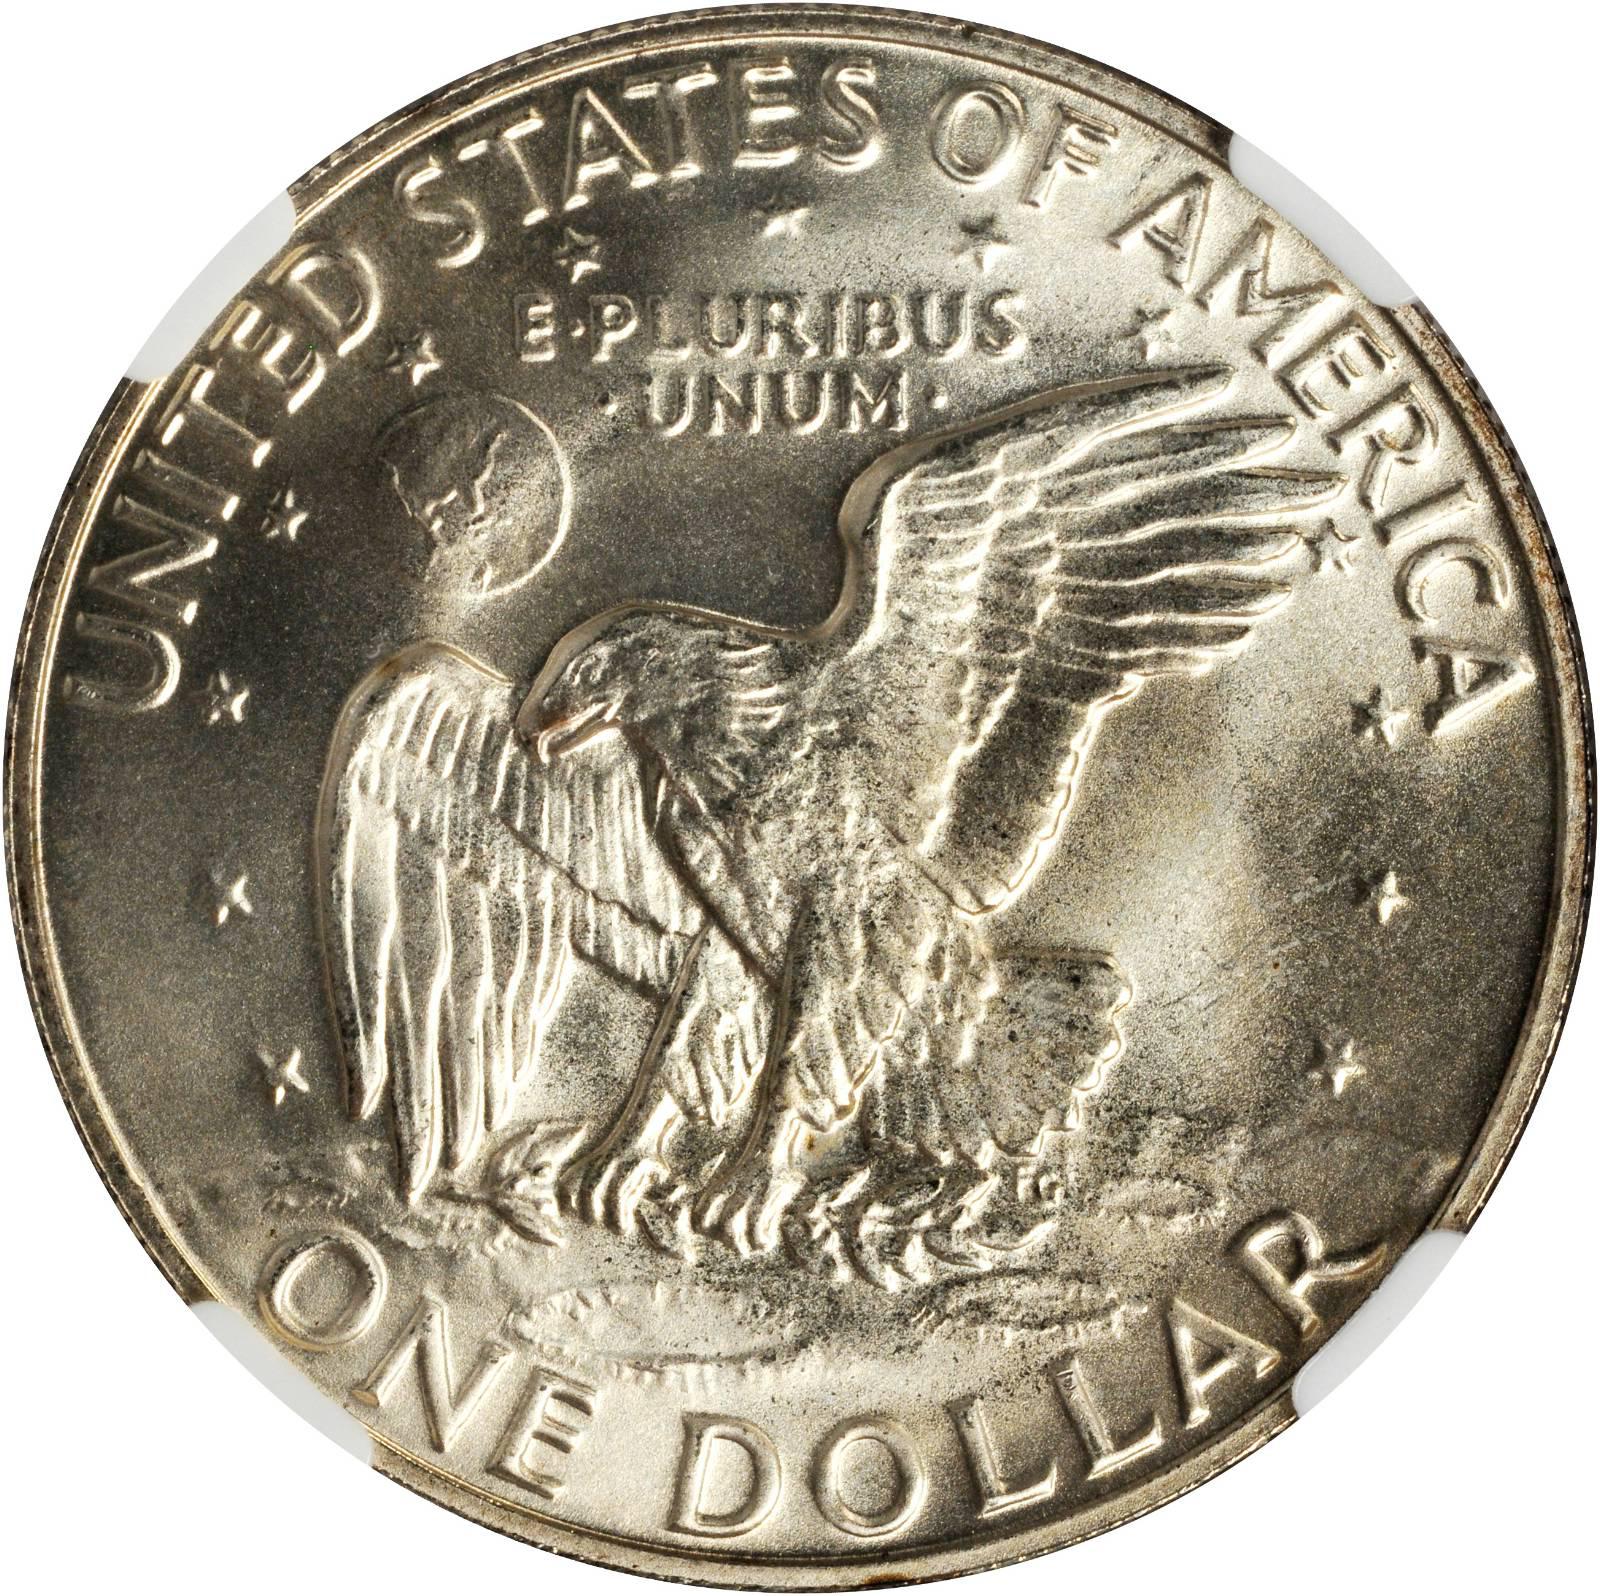 Value of 1974-S Eisenhower Dollar | Sell Modern Coins